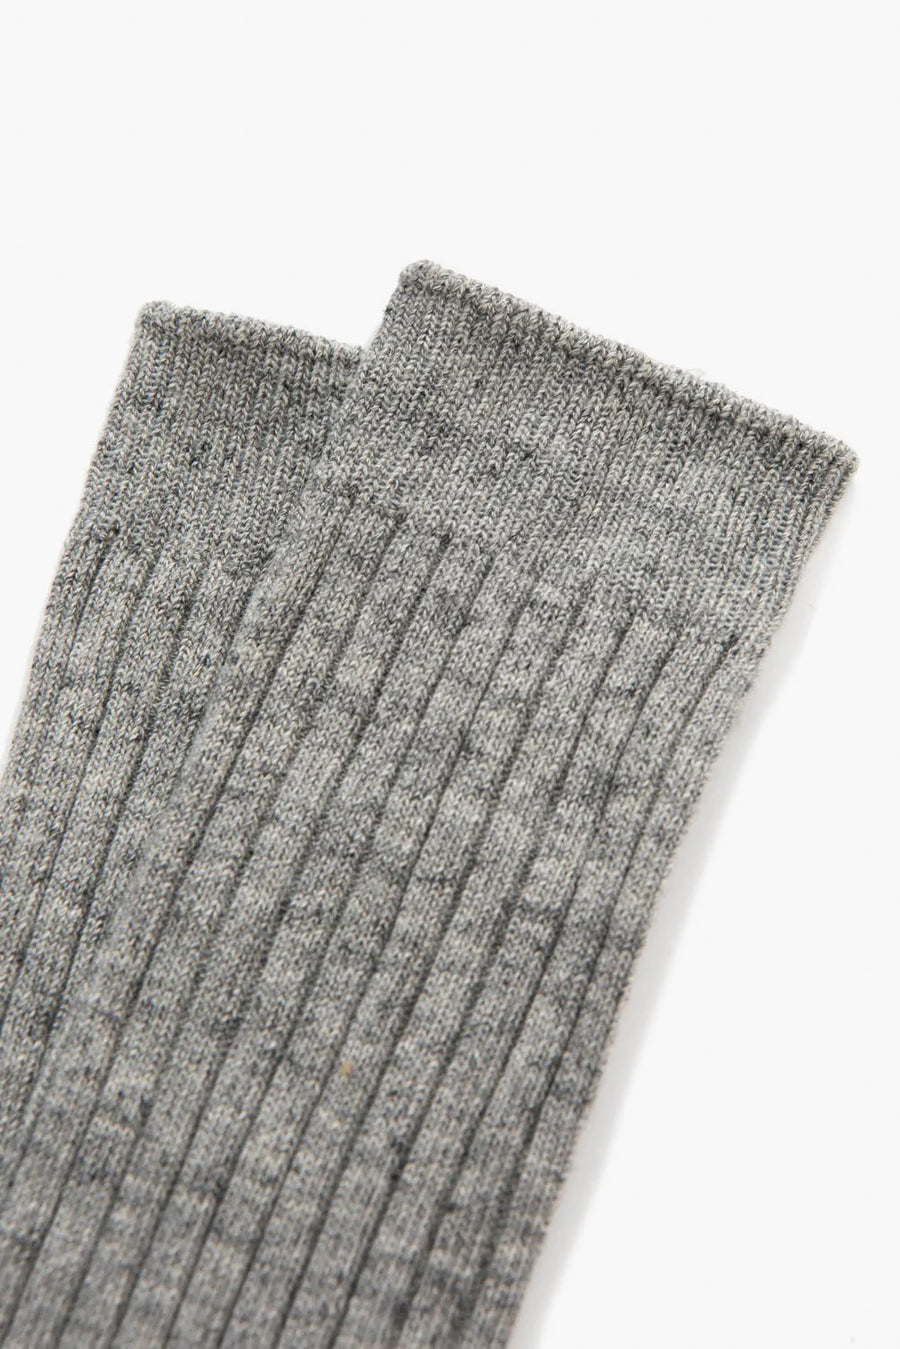 LWC Socks - Grey